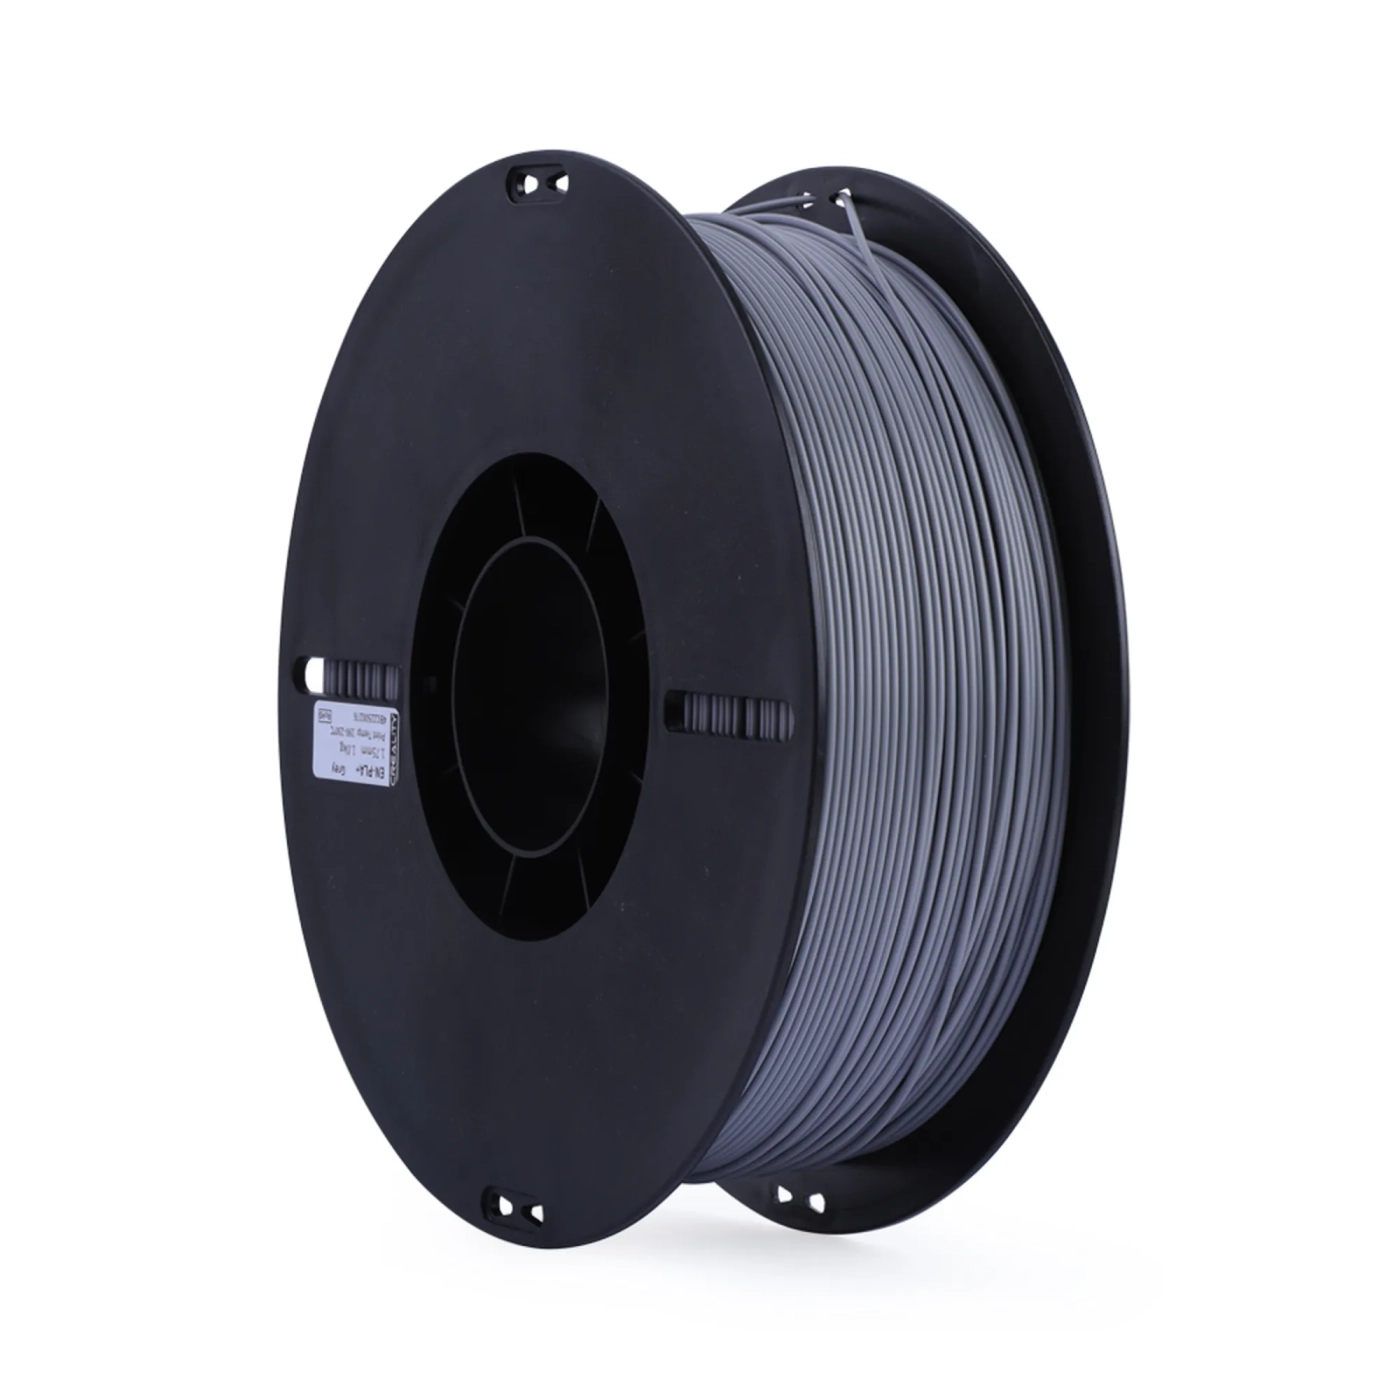 Купить PLA+ Filament (пластик) для 3D принтера CREALITY 1кг, 1.75мм, серый - фото 5